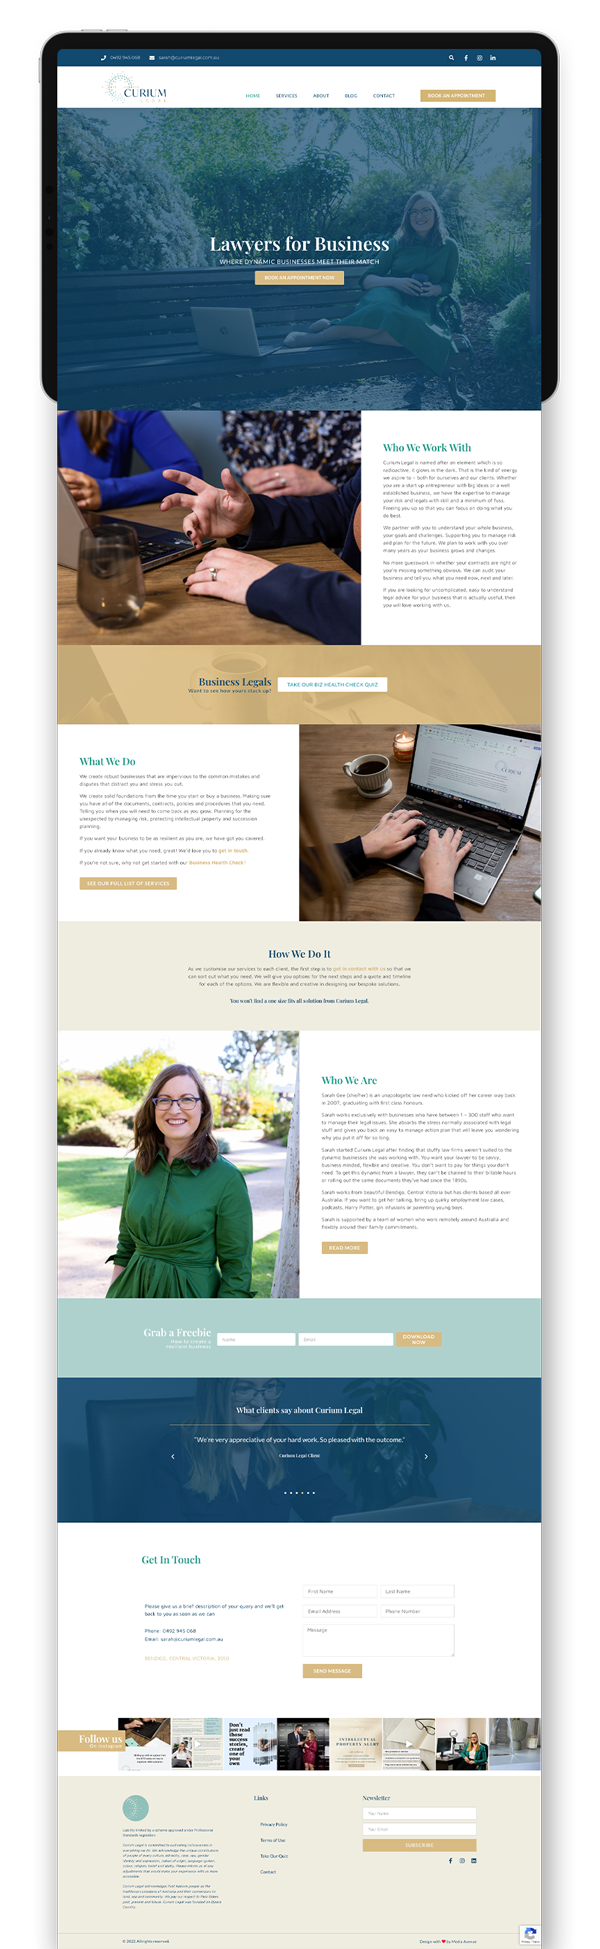 Media Avenue client wordpress website design for Curium Legal